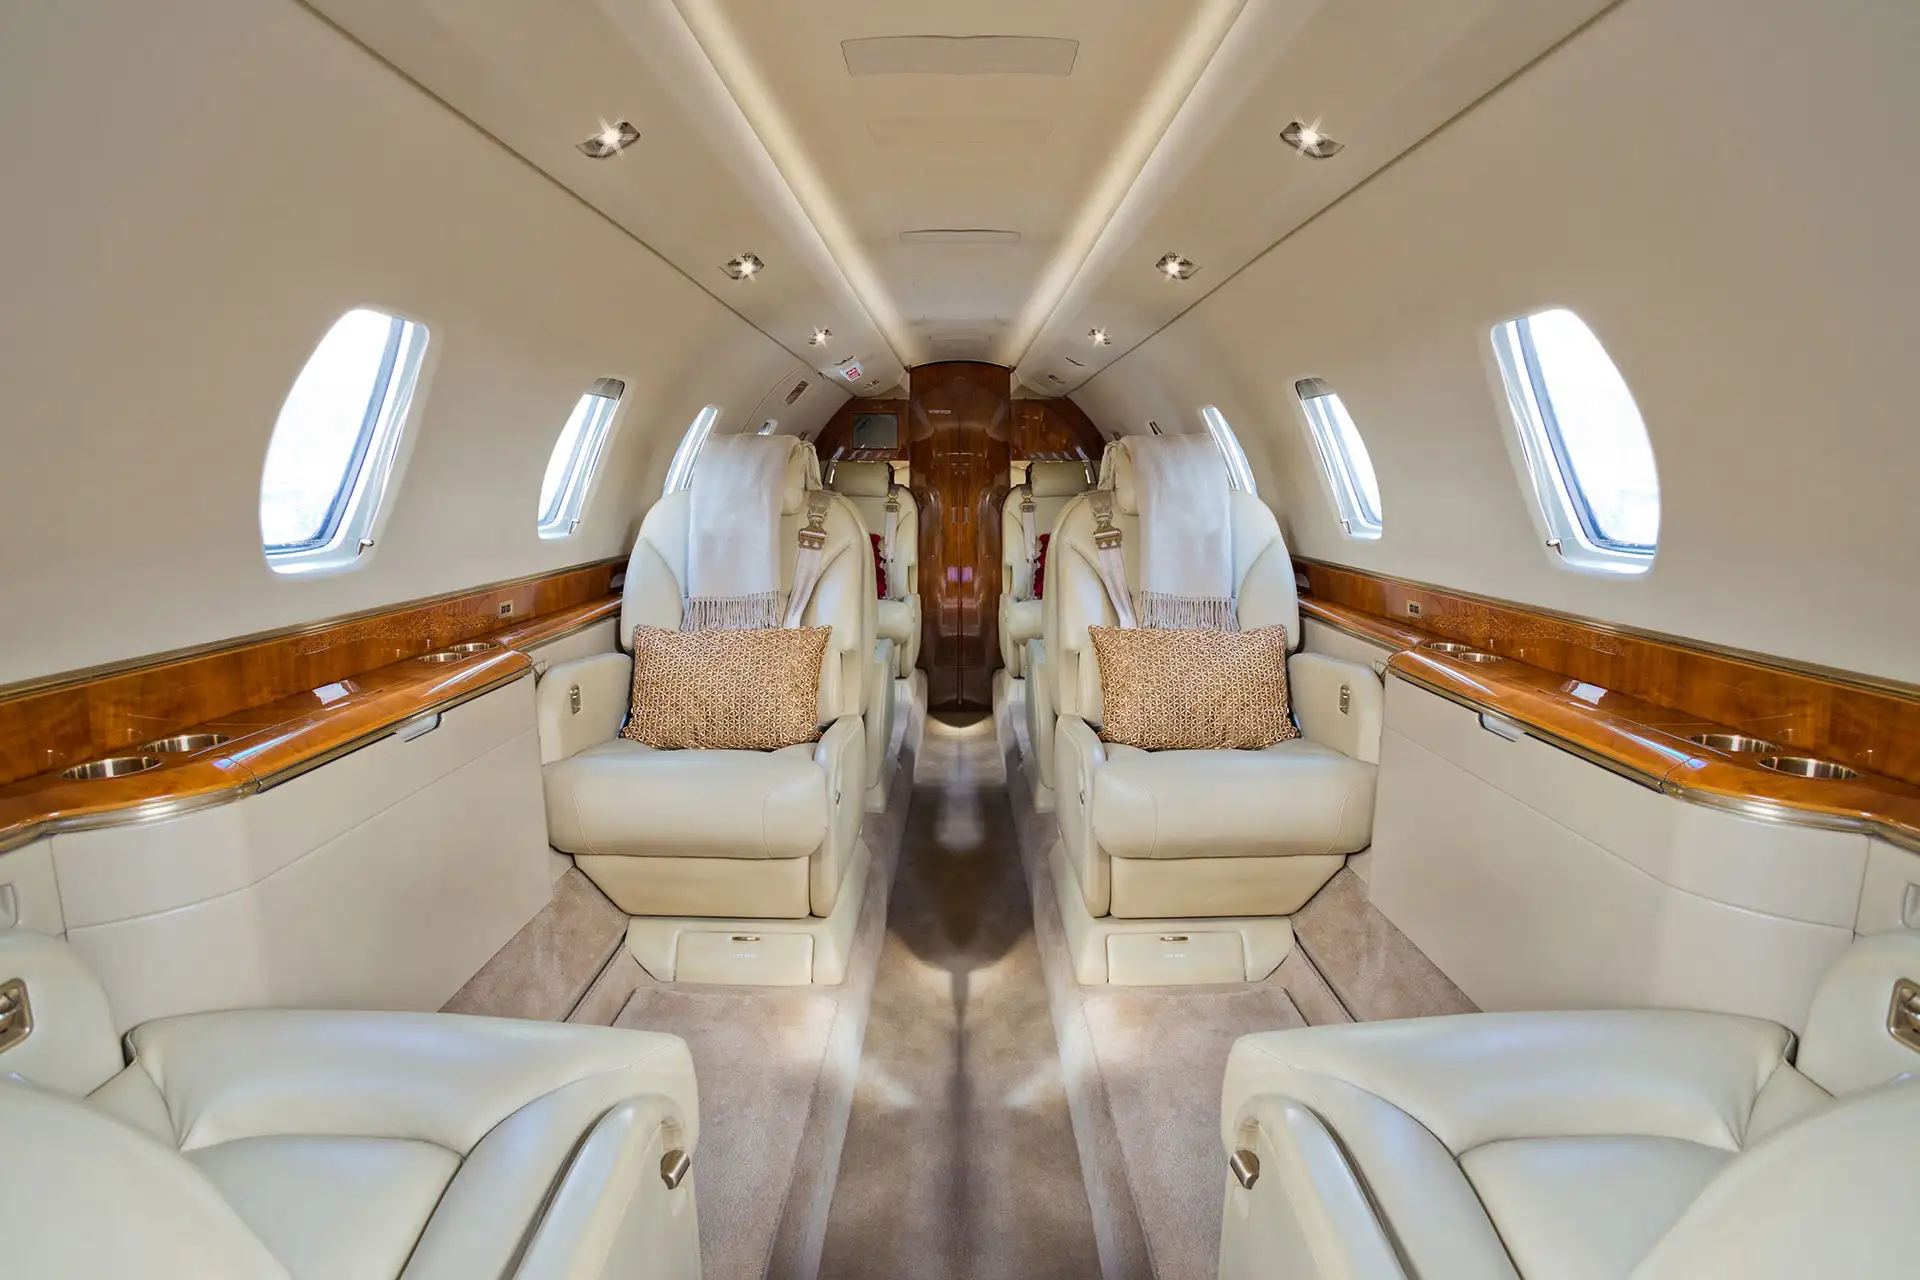 Private Plane; Courtesy of Carlos Yudica/Shutterstock.com